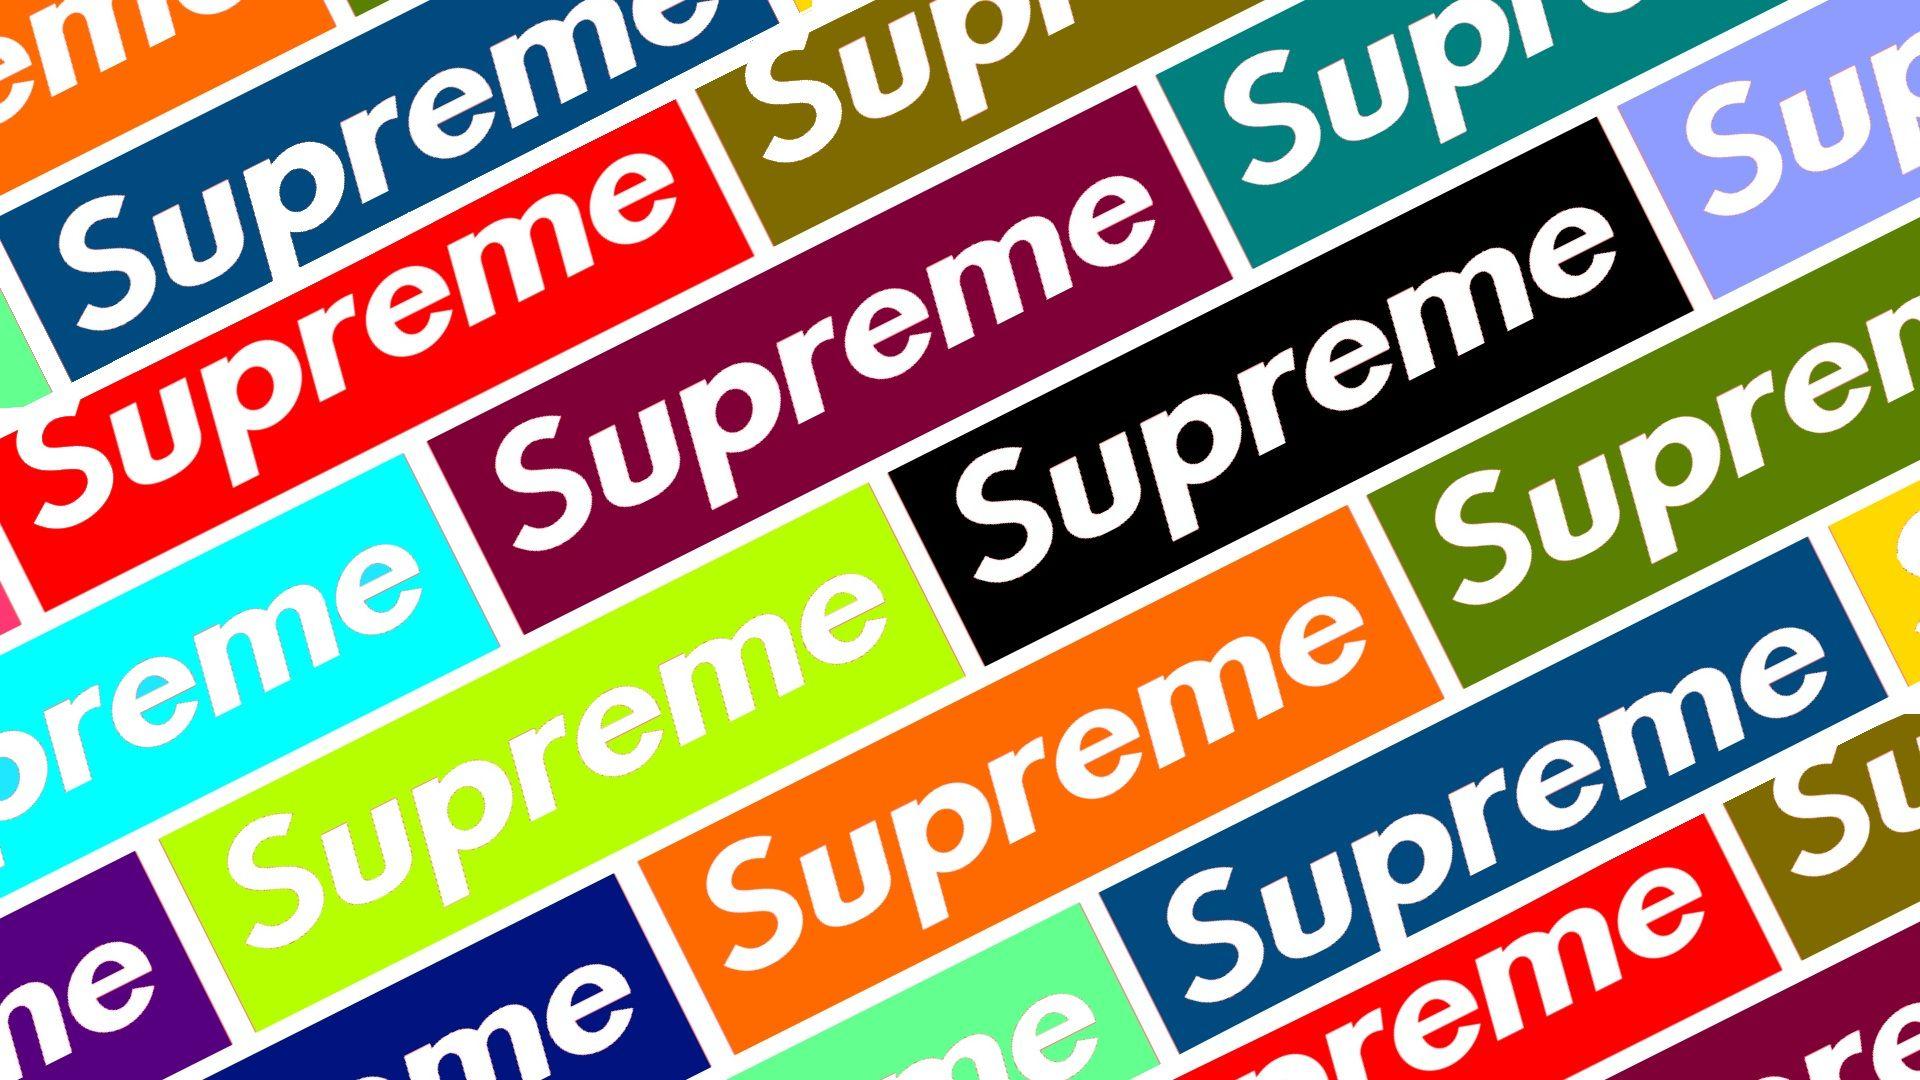 Supreme Box Logo Group, LV Supreme Logo HD wallpaper